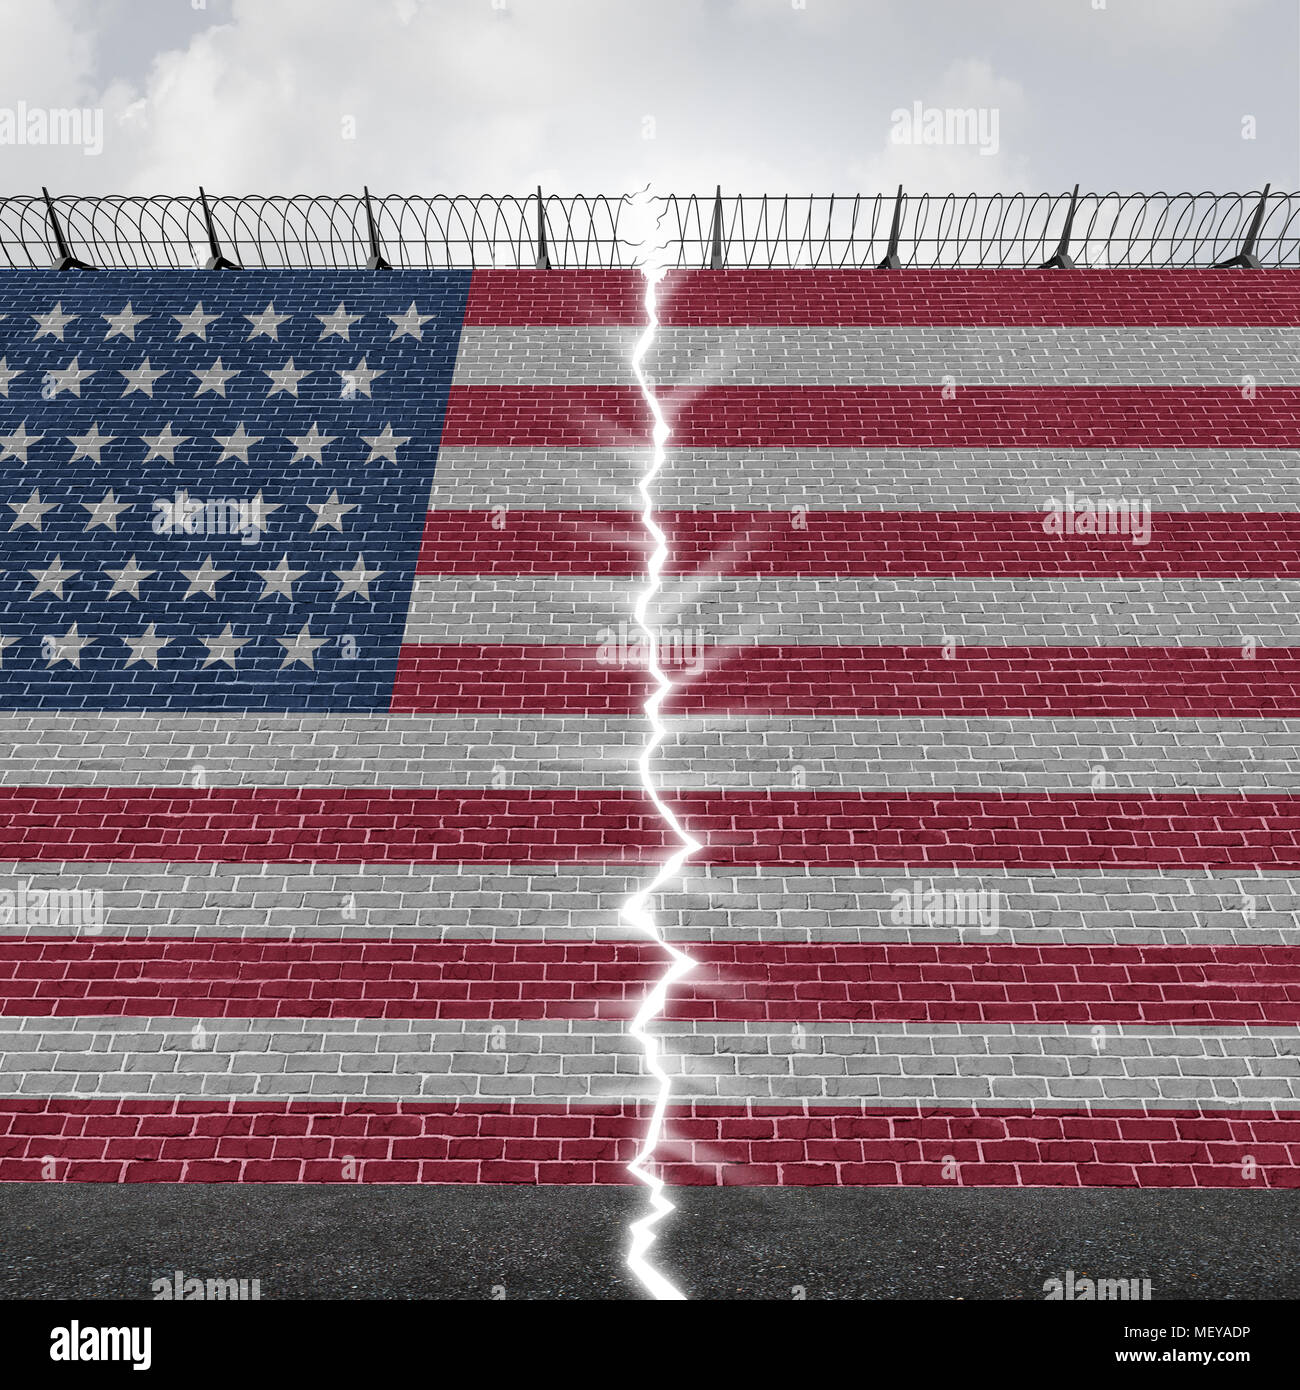 United States Grenzmauer Konzept als uns Mexiko Barriere mit einer glühenden Öffnung als Hoffnung und Freiheit Einwanderung oder flüchtling Symbol. Stockfoto